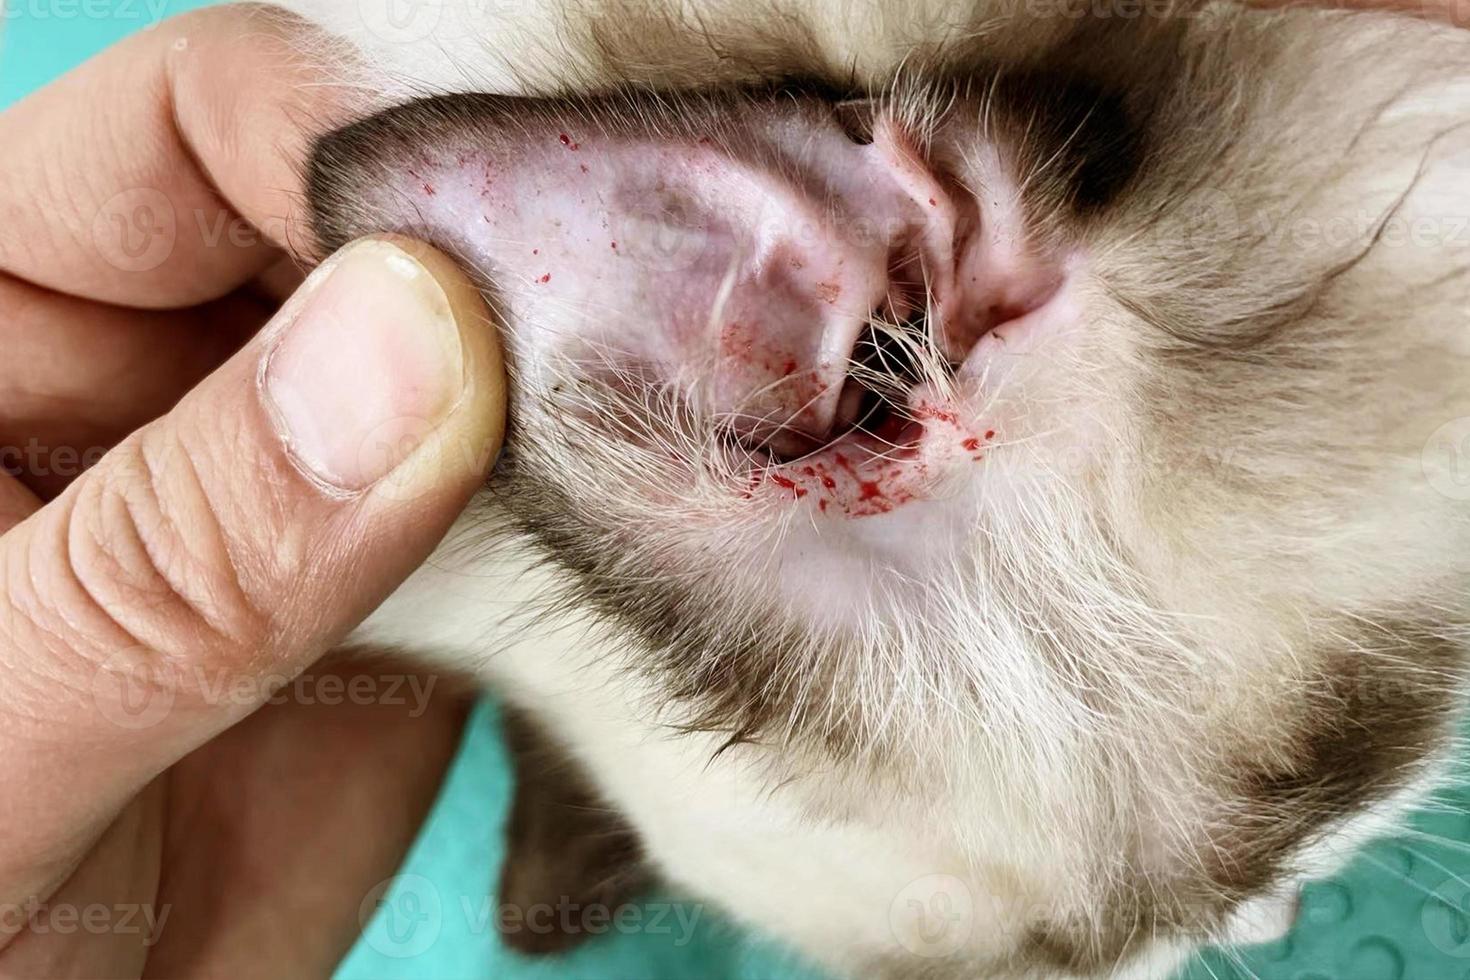 Langhaarkatze hat Wunden am Ohr und ist verletzt. Katzenohr hat Blut. Kätzchenohr ist verletzt foto